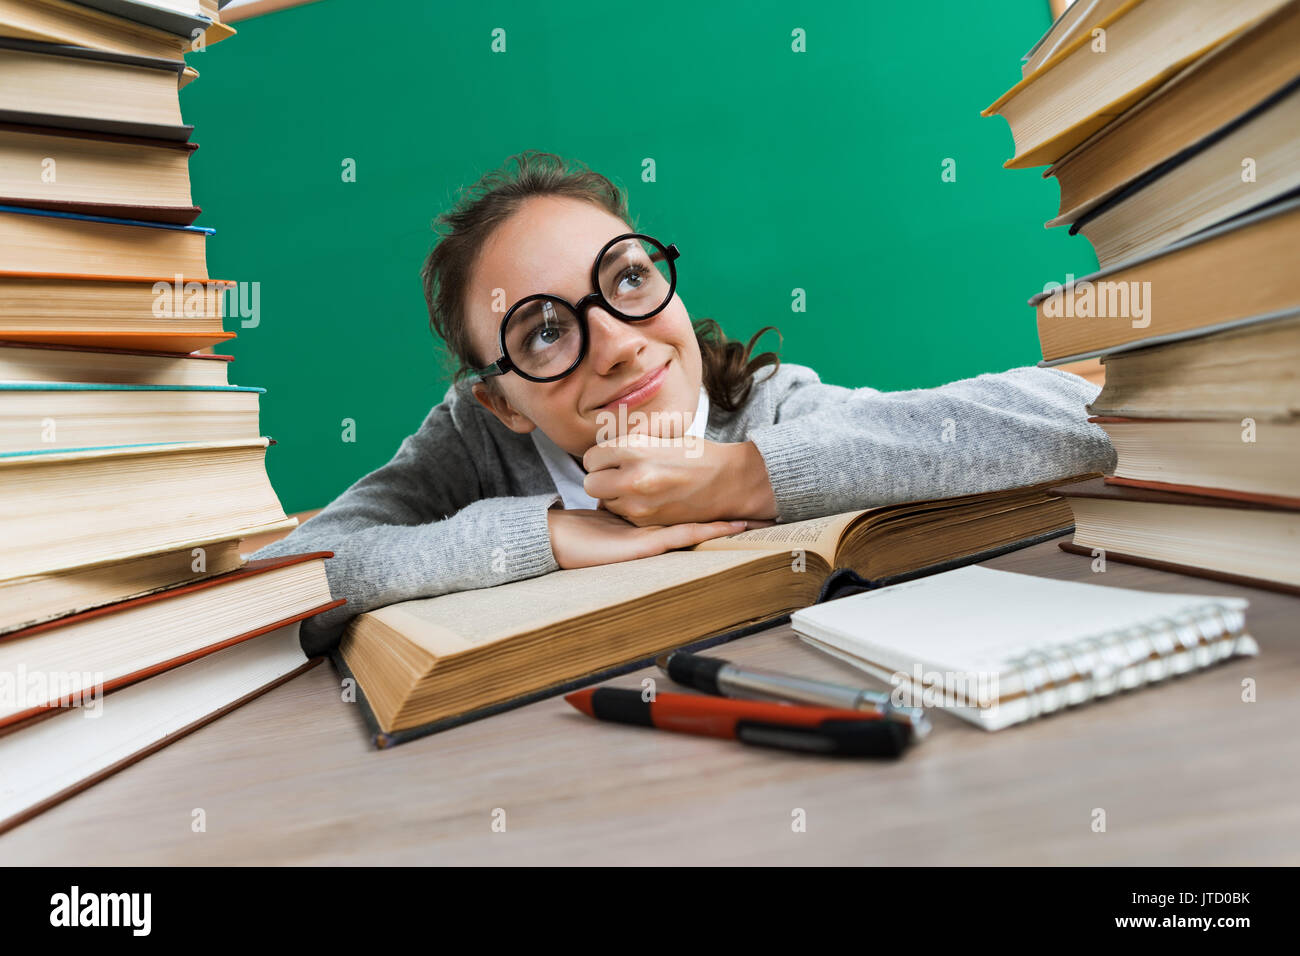 Schüler träumen oder denken an etwas Angenehmes während am Schreibtisch mit offenem Buch sitzen. Bildung Konzept Stockfoto